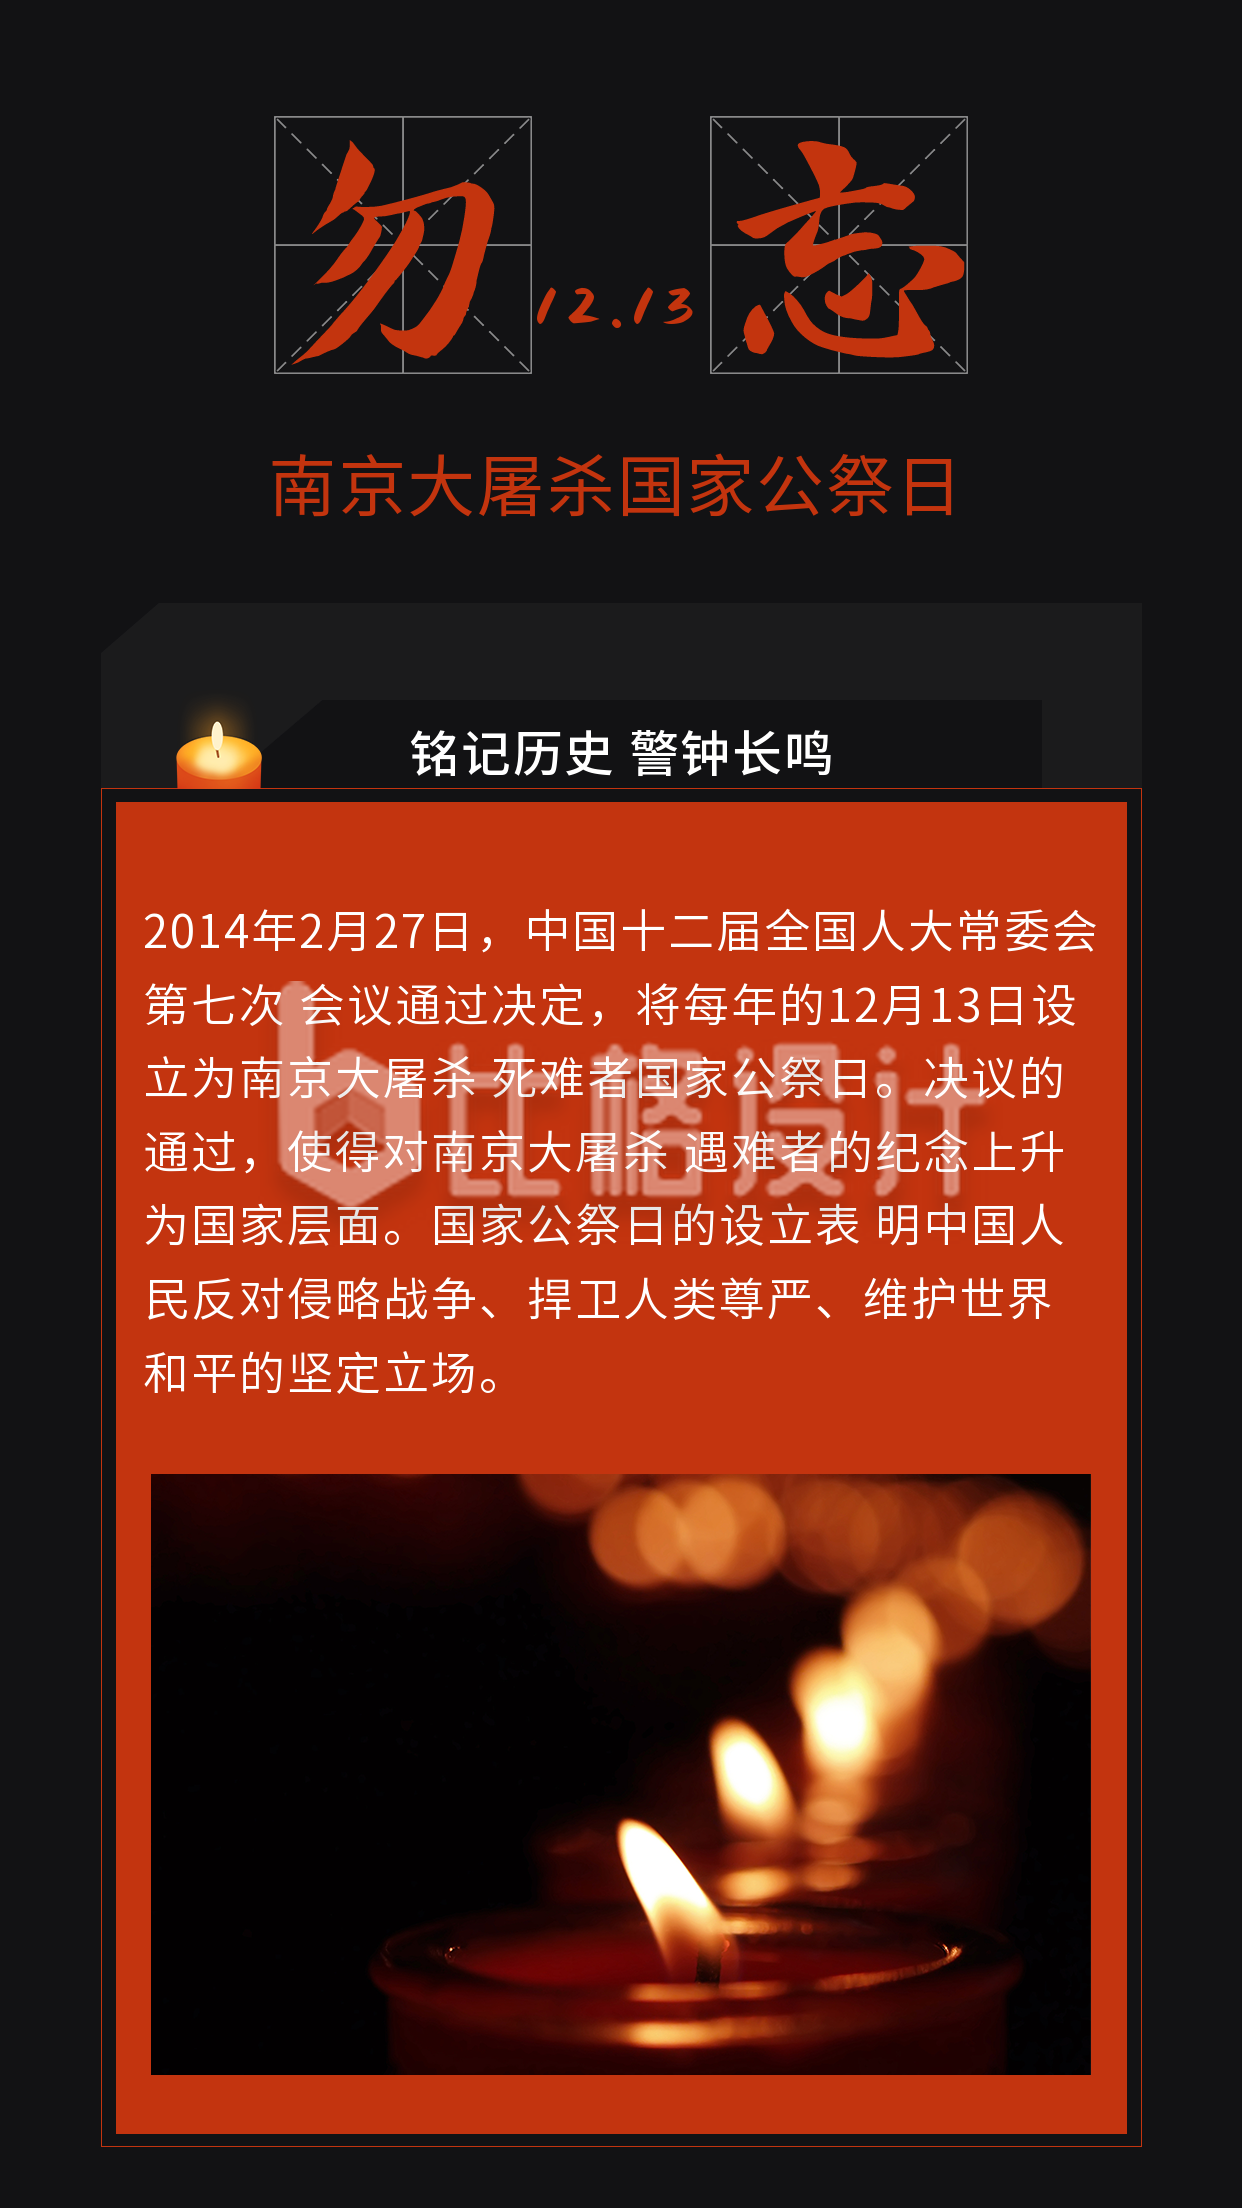 纪念南京大屠杀国家公祭日竖版配图